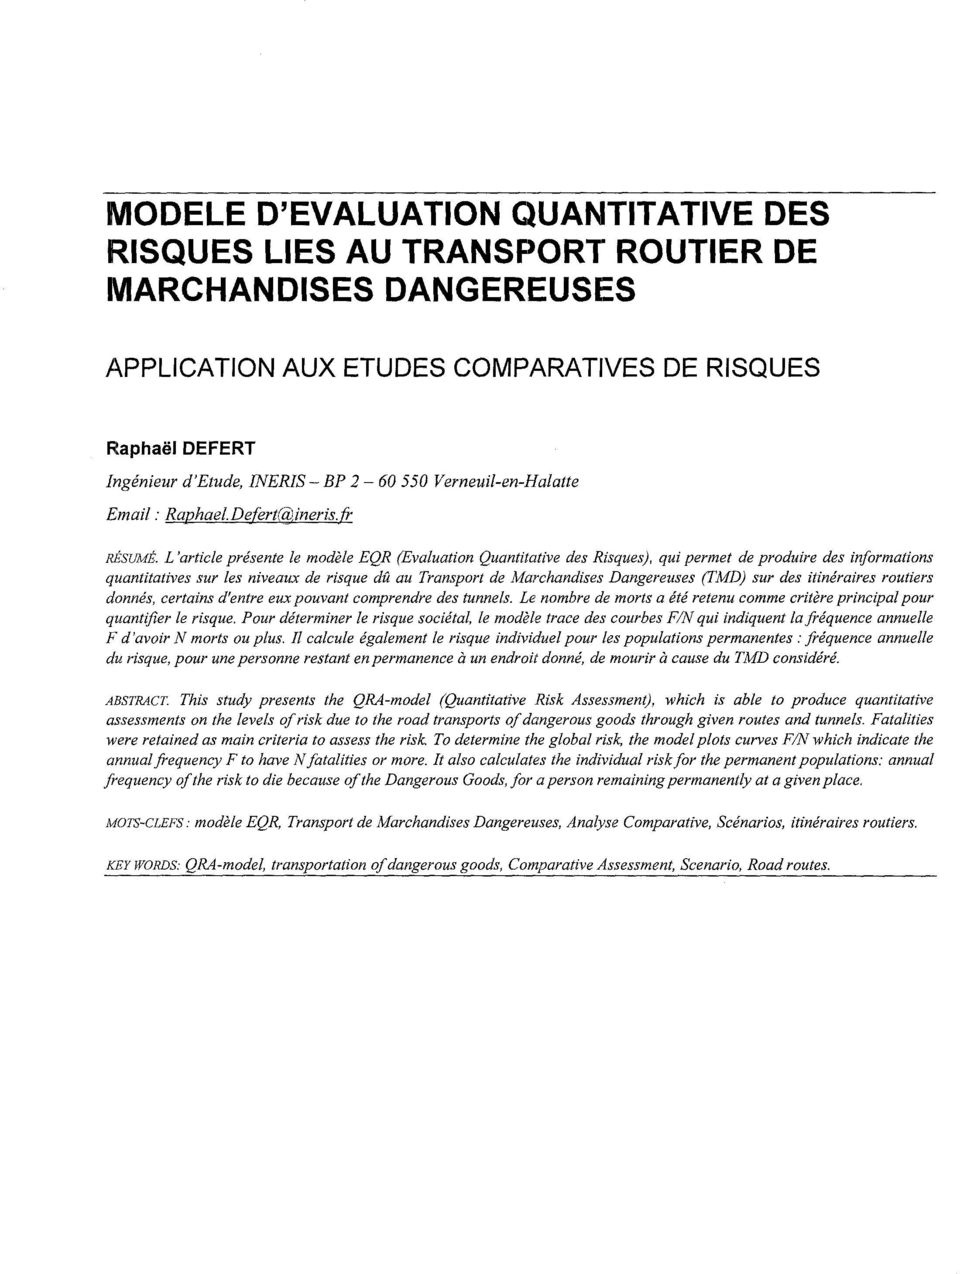 L'article présente le modèle EQR (Evaluation Quantitative des Risques), qui permet de produire des informations quantitatives sur les niveaux de risque dû au Transport de Marchandises Dangereuses